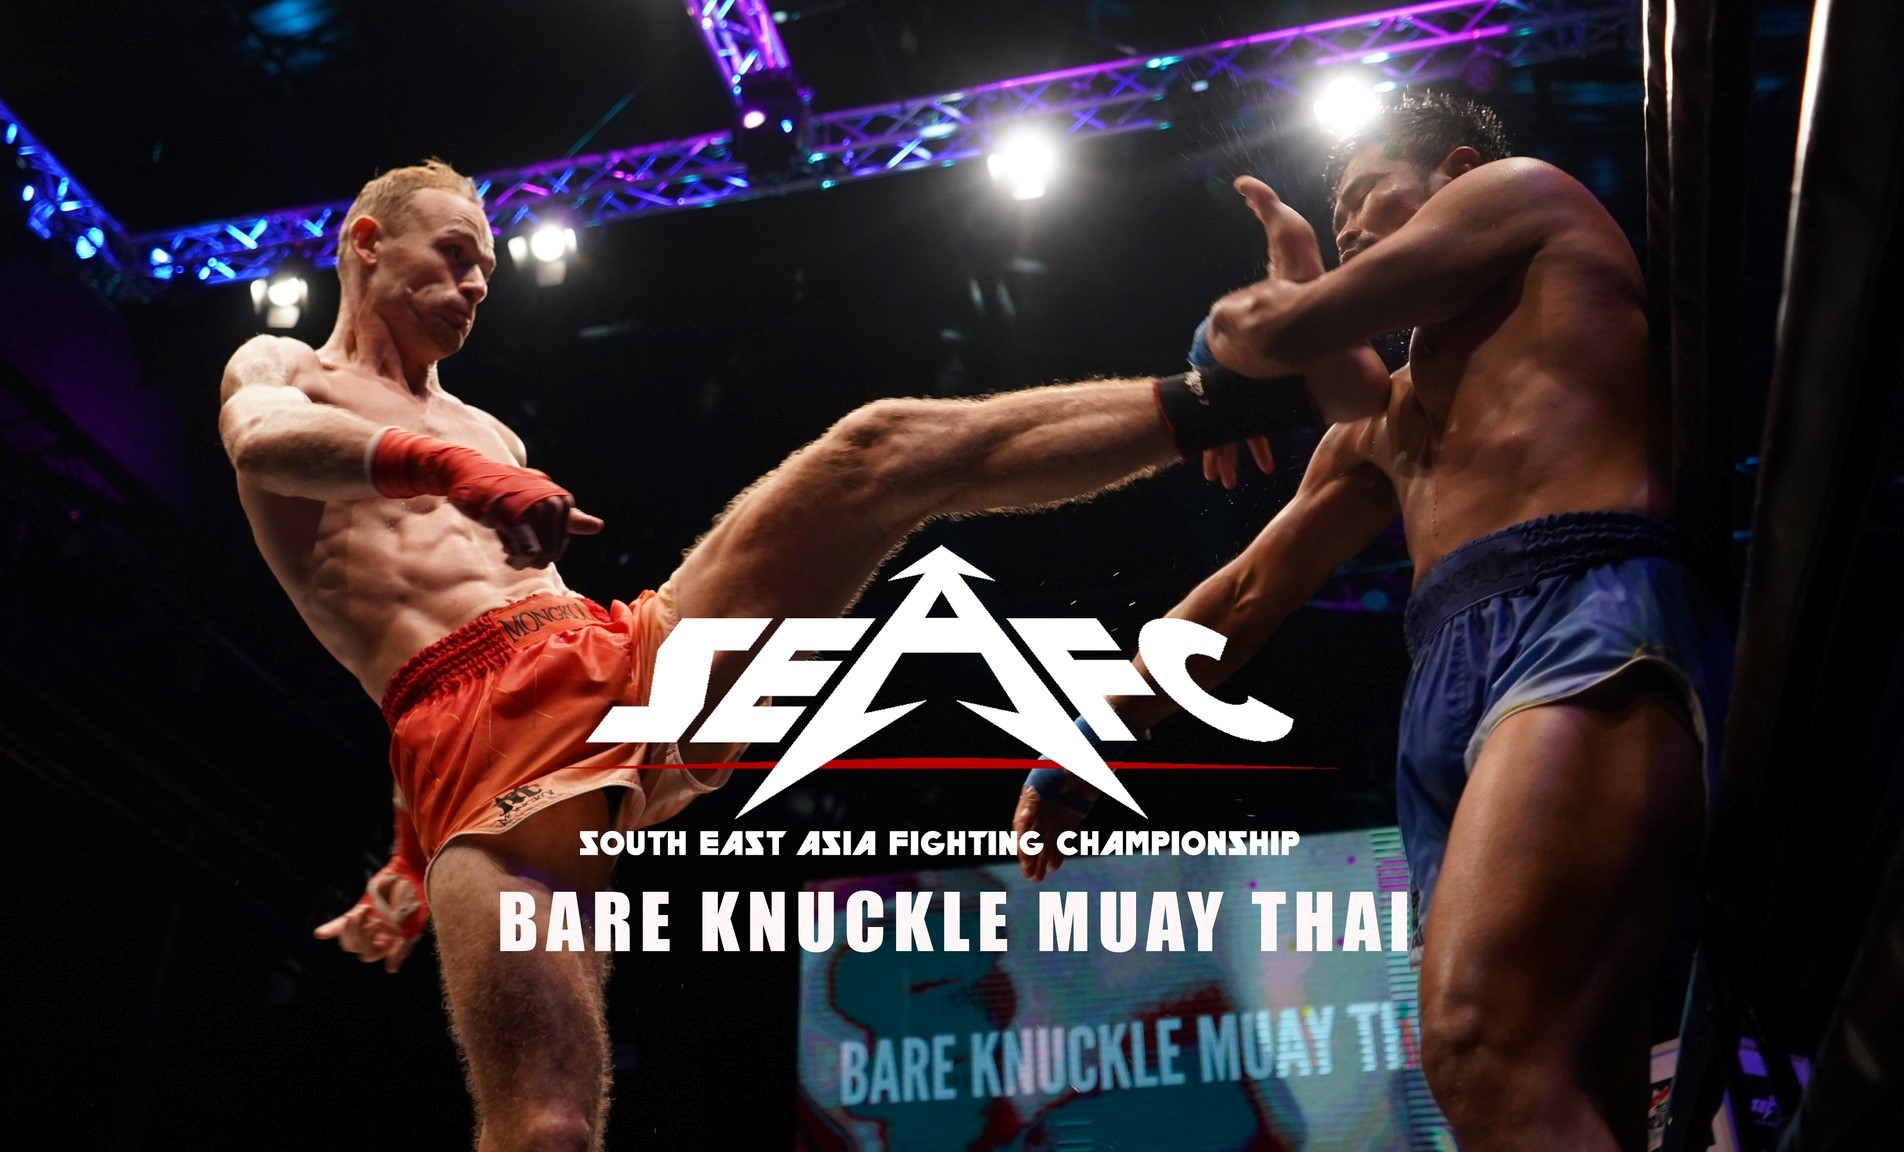 SEAFC - Bare knuckle muay thai